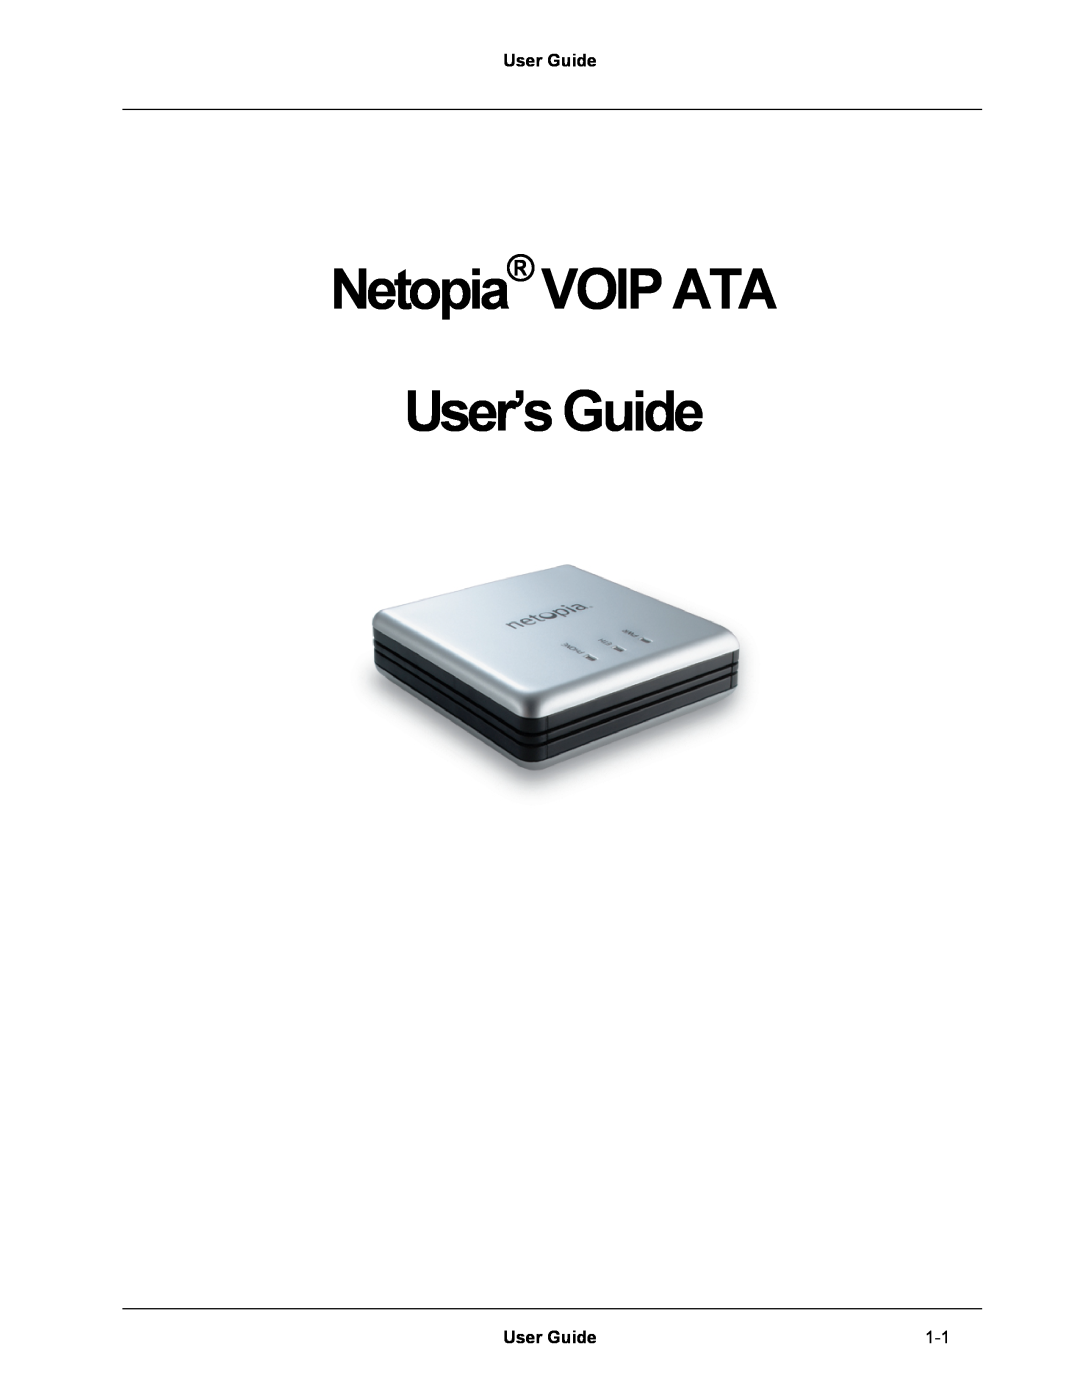 Netopia Network Adapater manual Netopia VOIP ATA User’sGuide, User Guide 